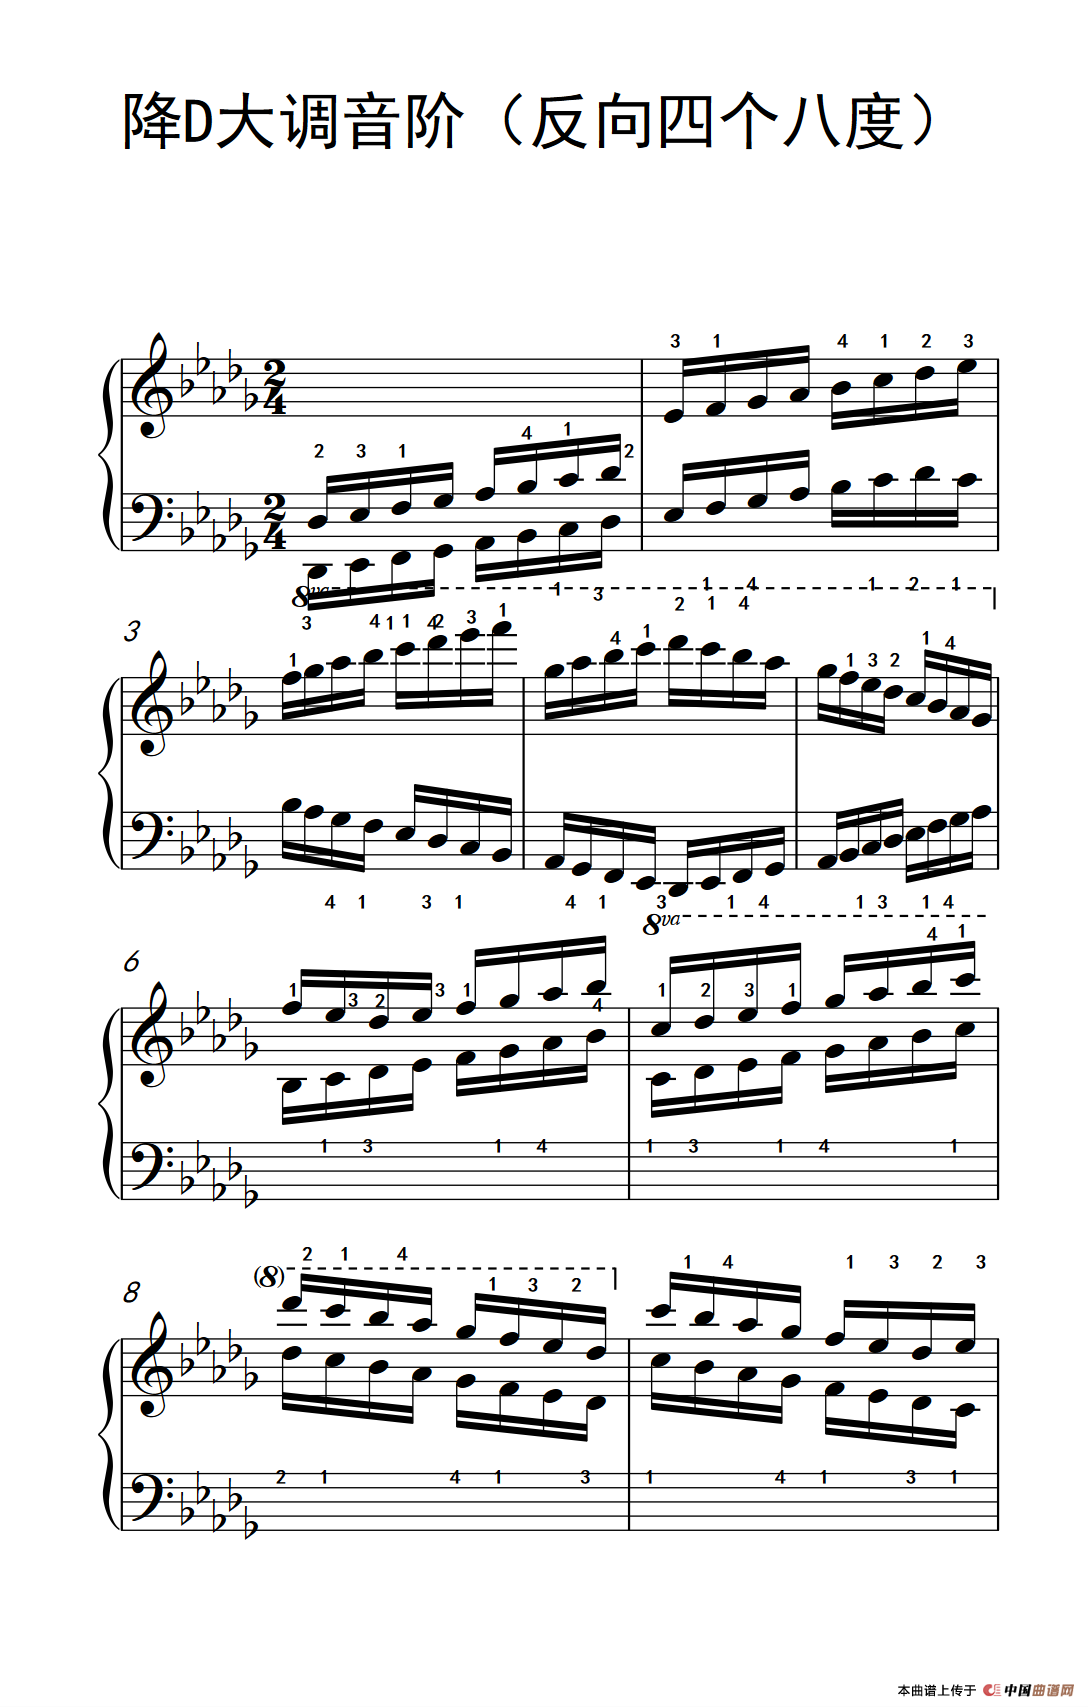 降d大调音阶(反向四个八度)(孩子们的钢琴音阶,和弦与琶音 2)图片